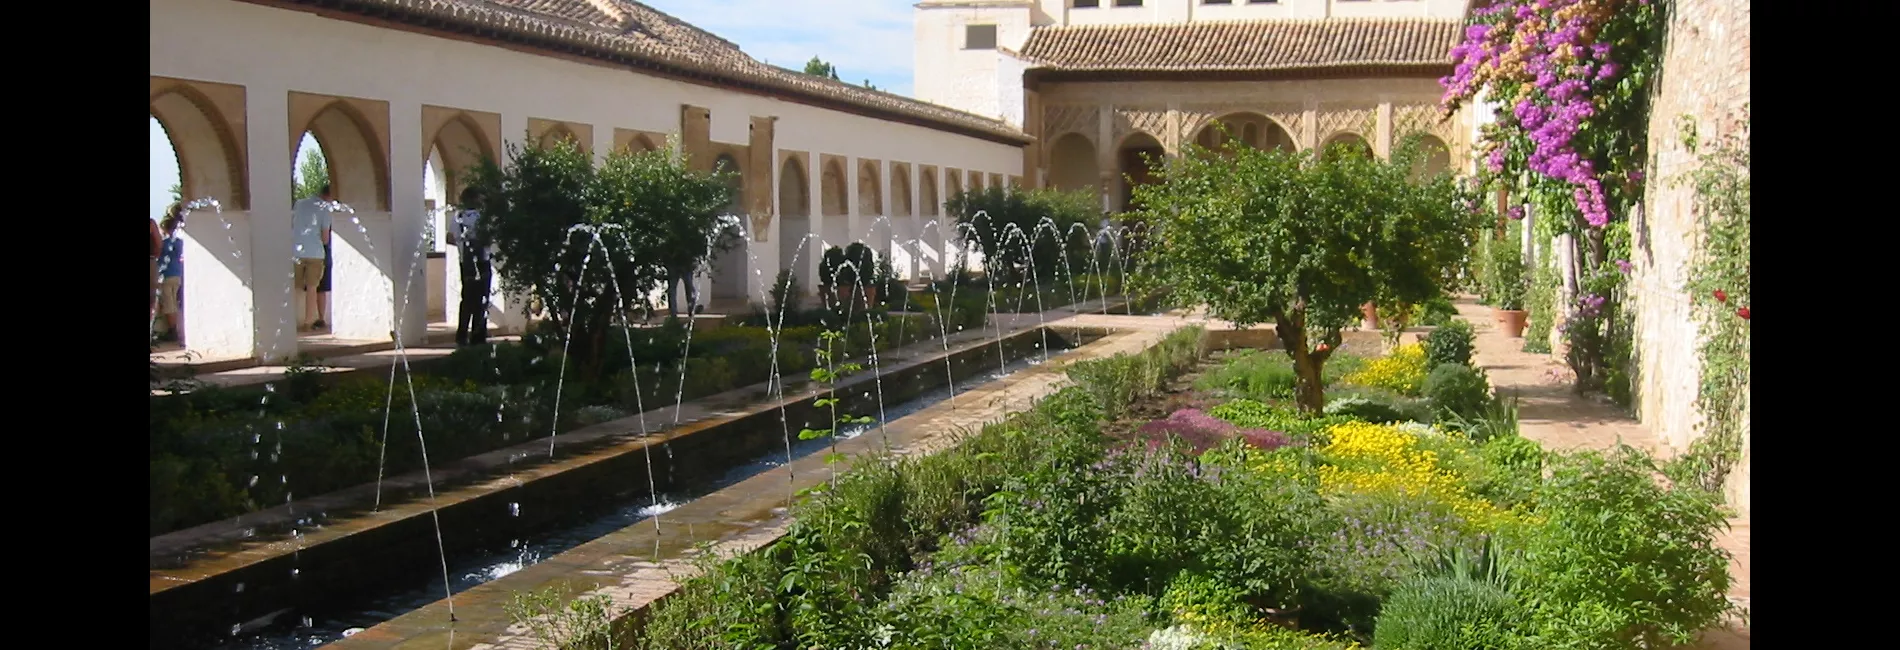 137-3724	Paratiisin puutarha keskiajalta: pieniä kukkivia hedelmäpuita, kukkivia perennapenkkejä ja vilvoittavaa vettä. Generalife, Granada, Espanja